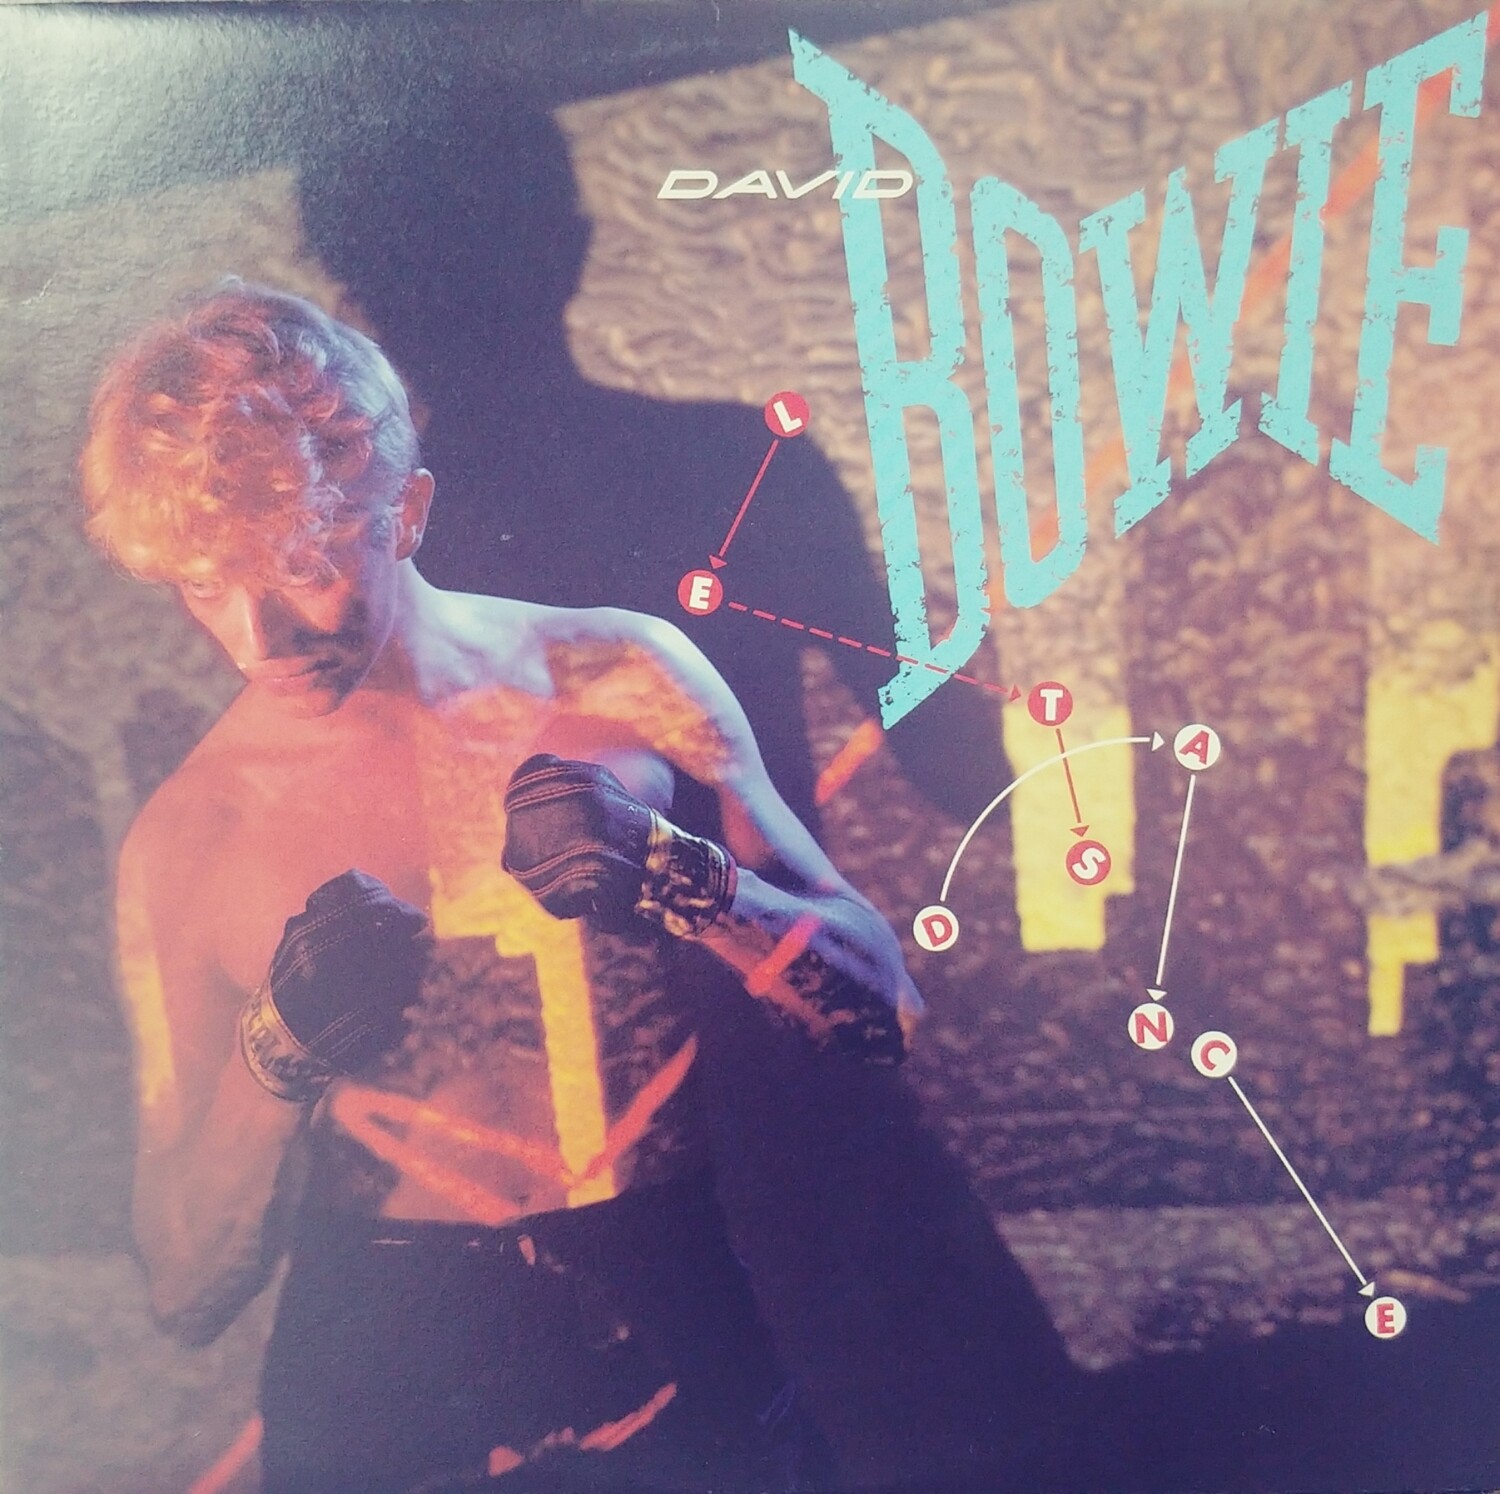 David Bowie - Let's dance